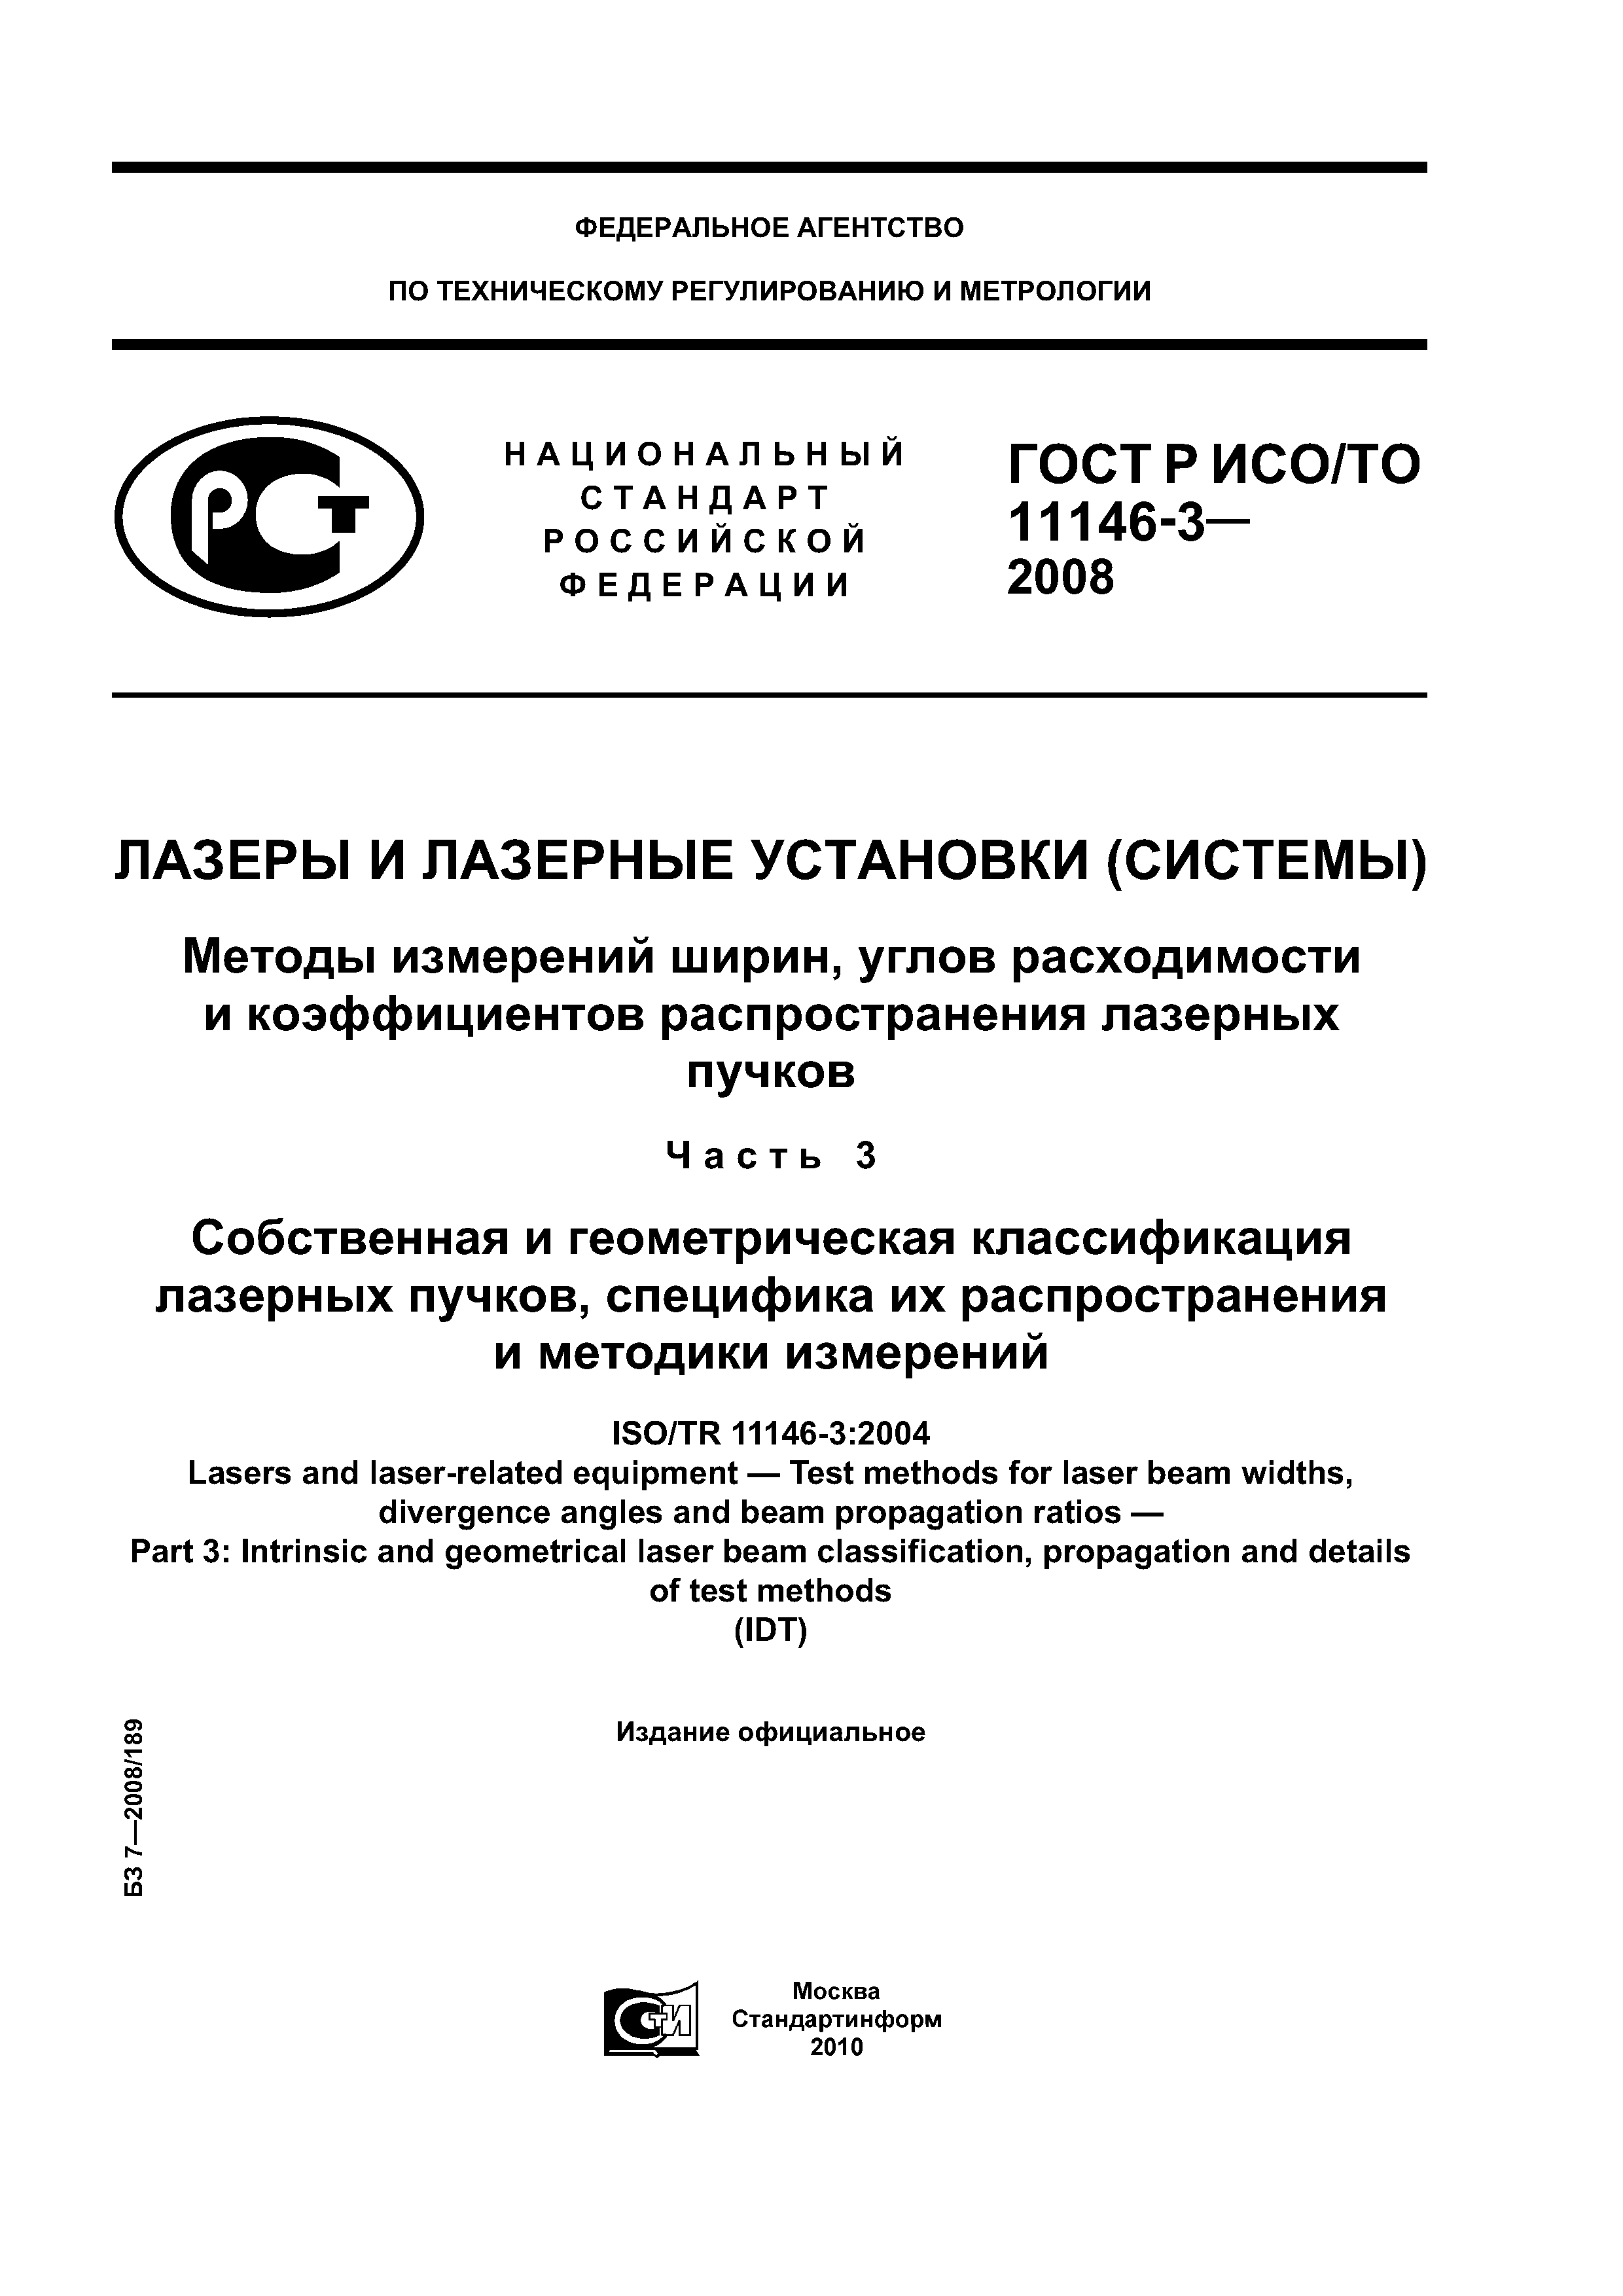 ГОСТ Р ИСО/ТО 11146-3-2008